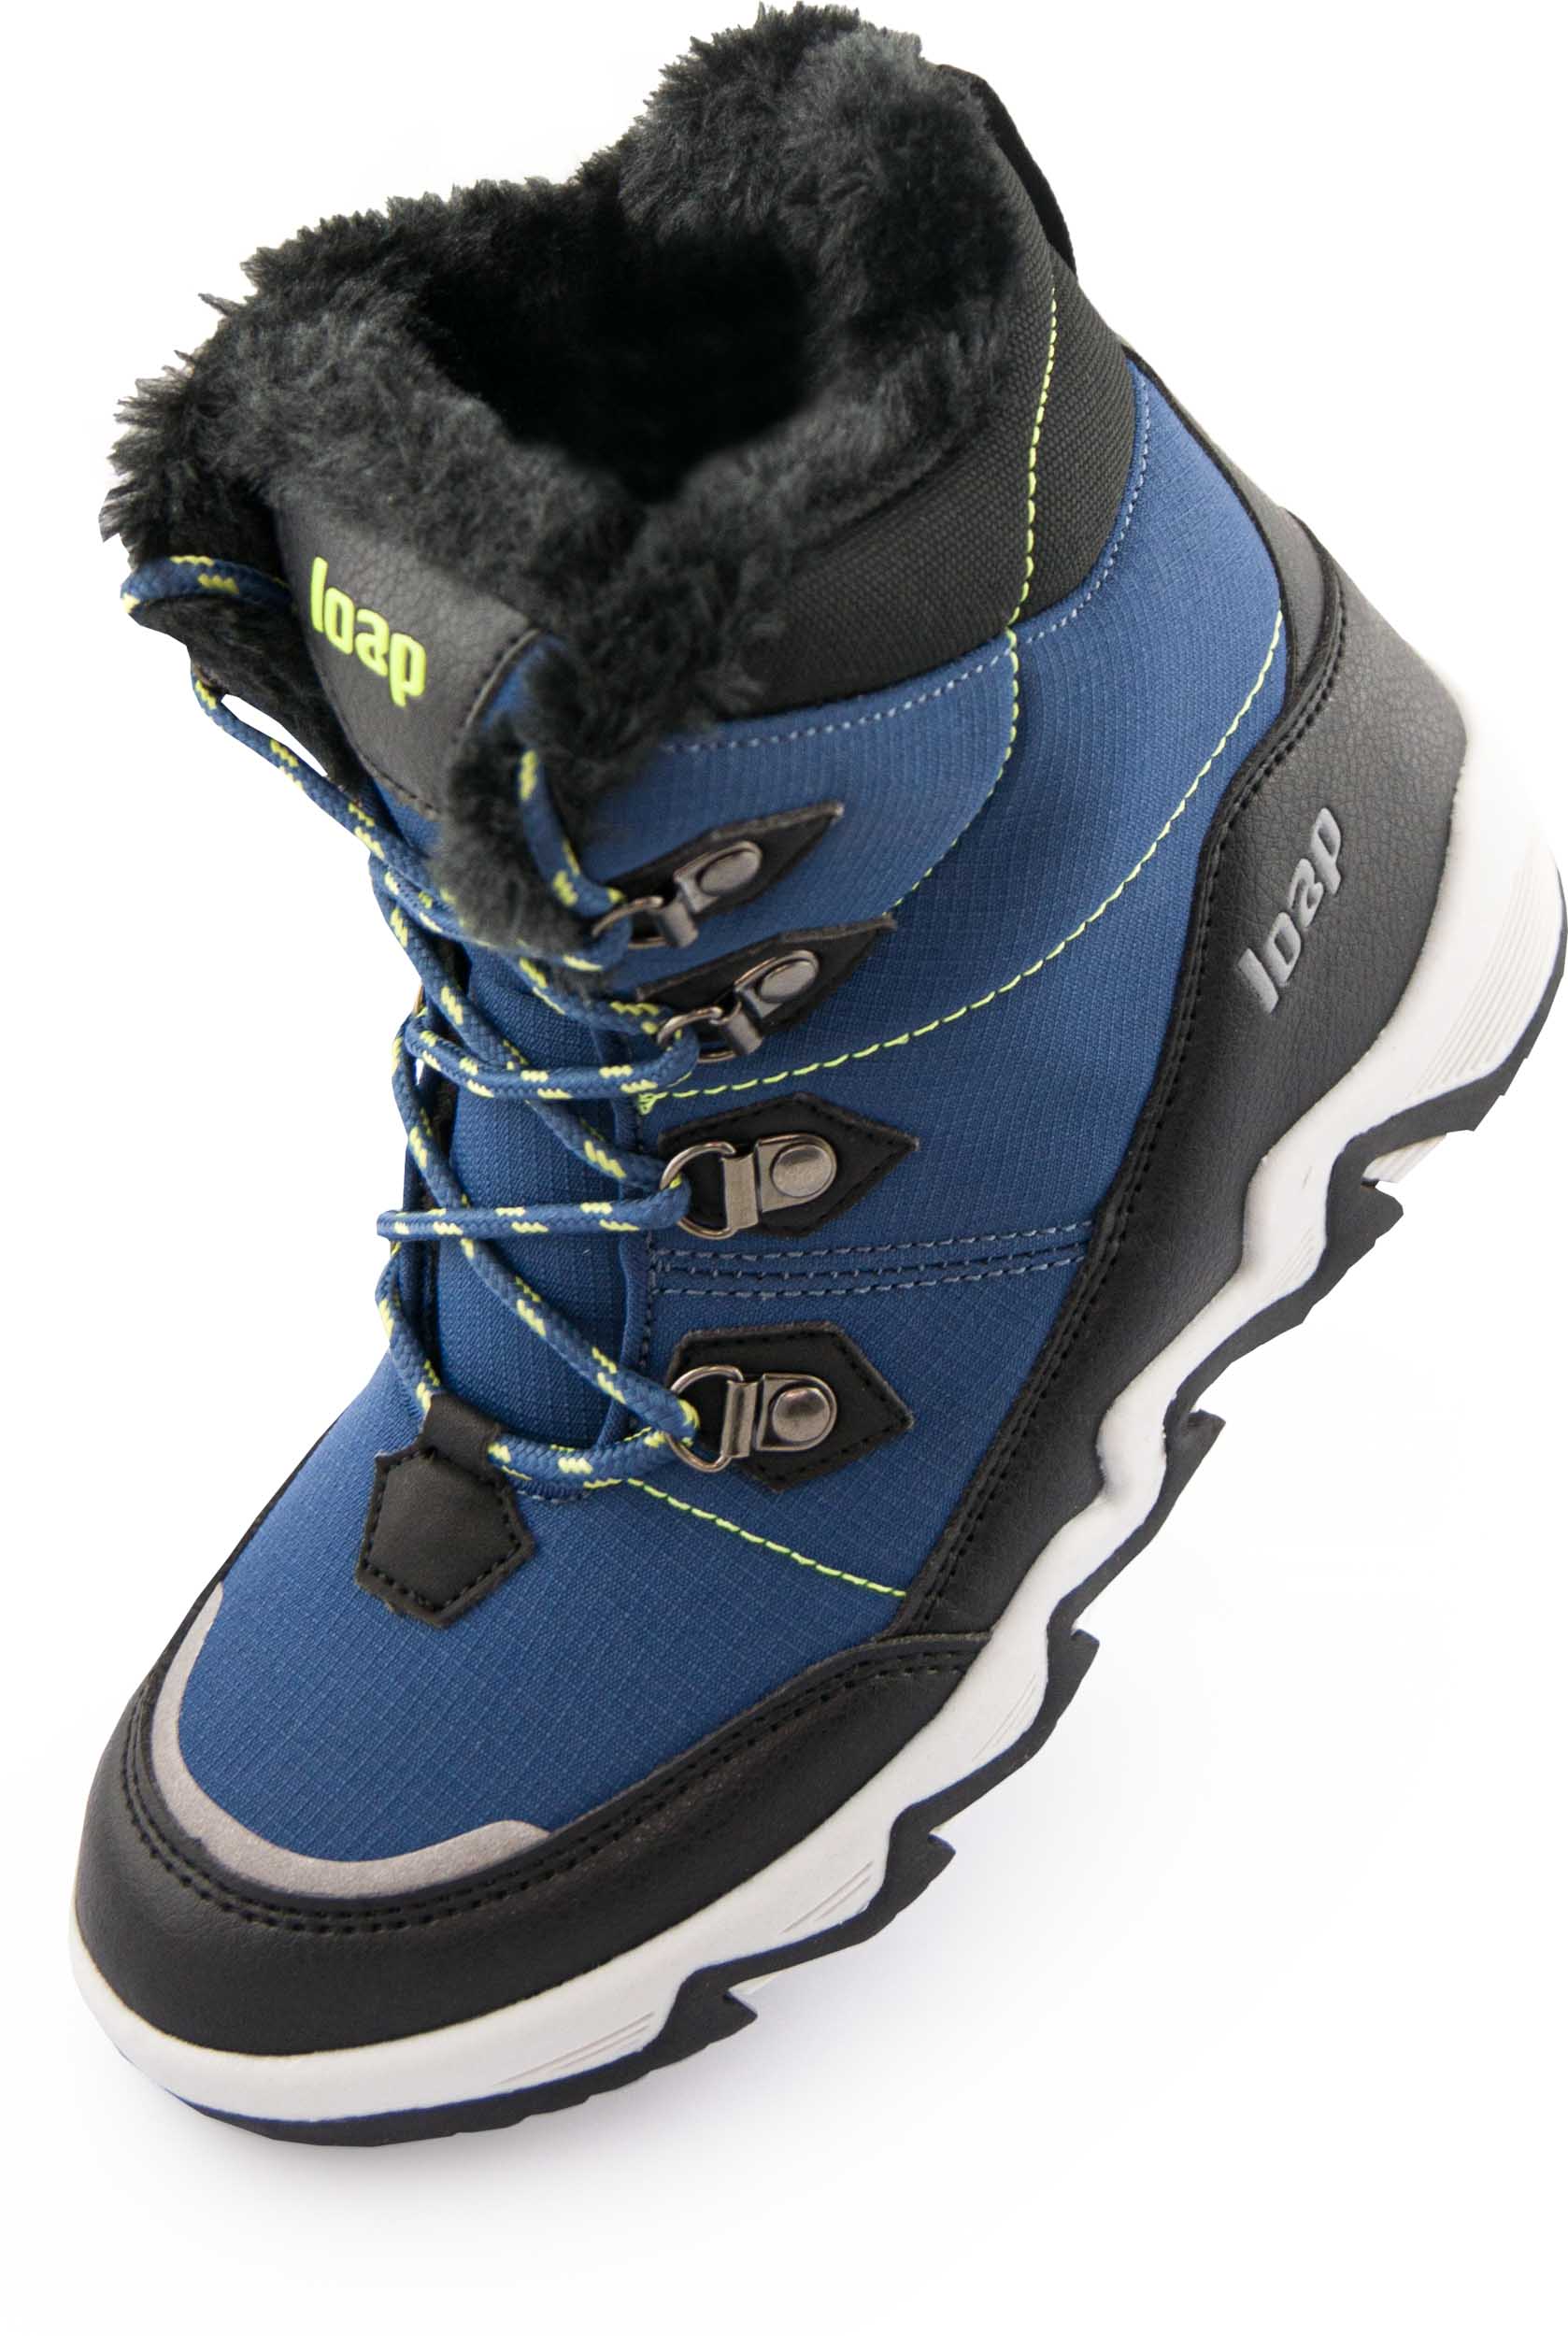 Dětské zimní boty LOAP LIMA blue|28